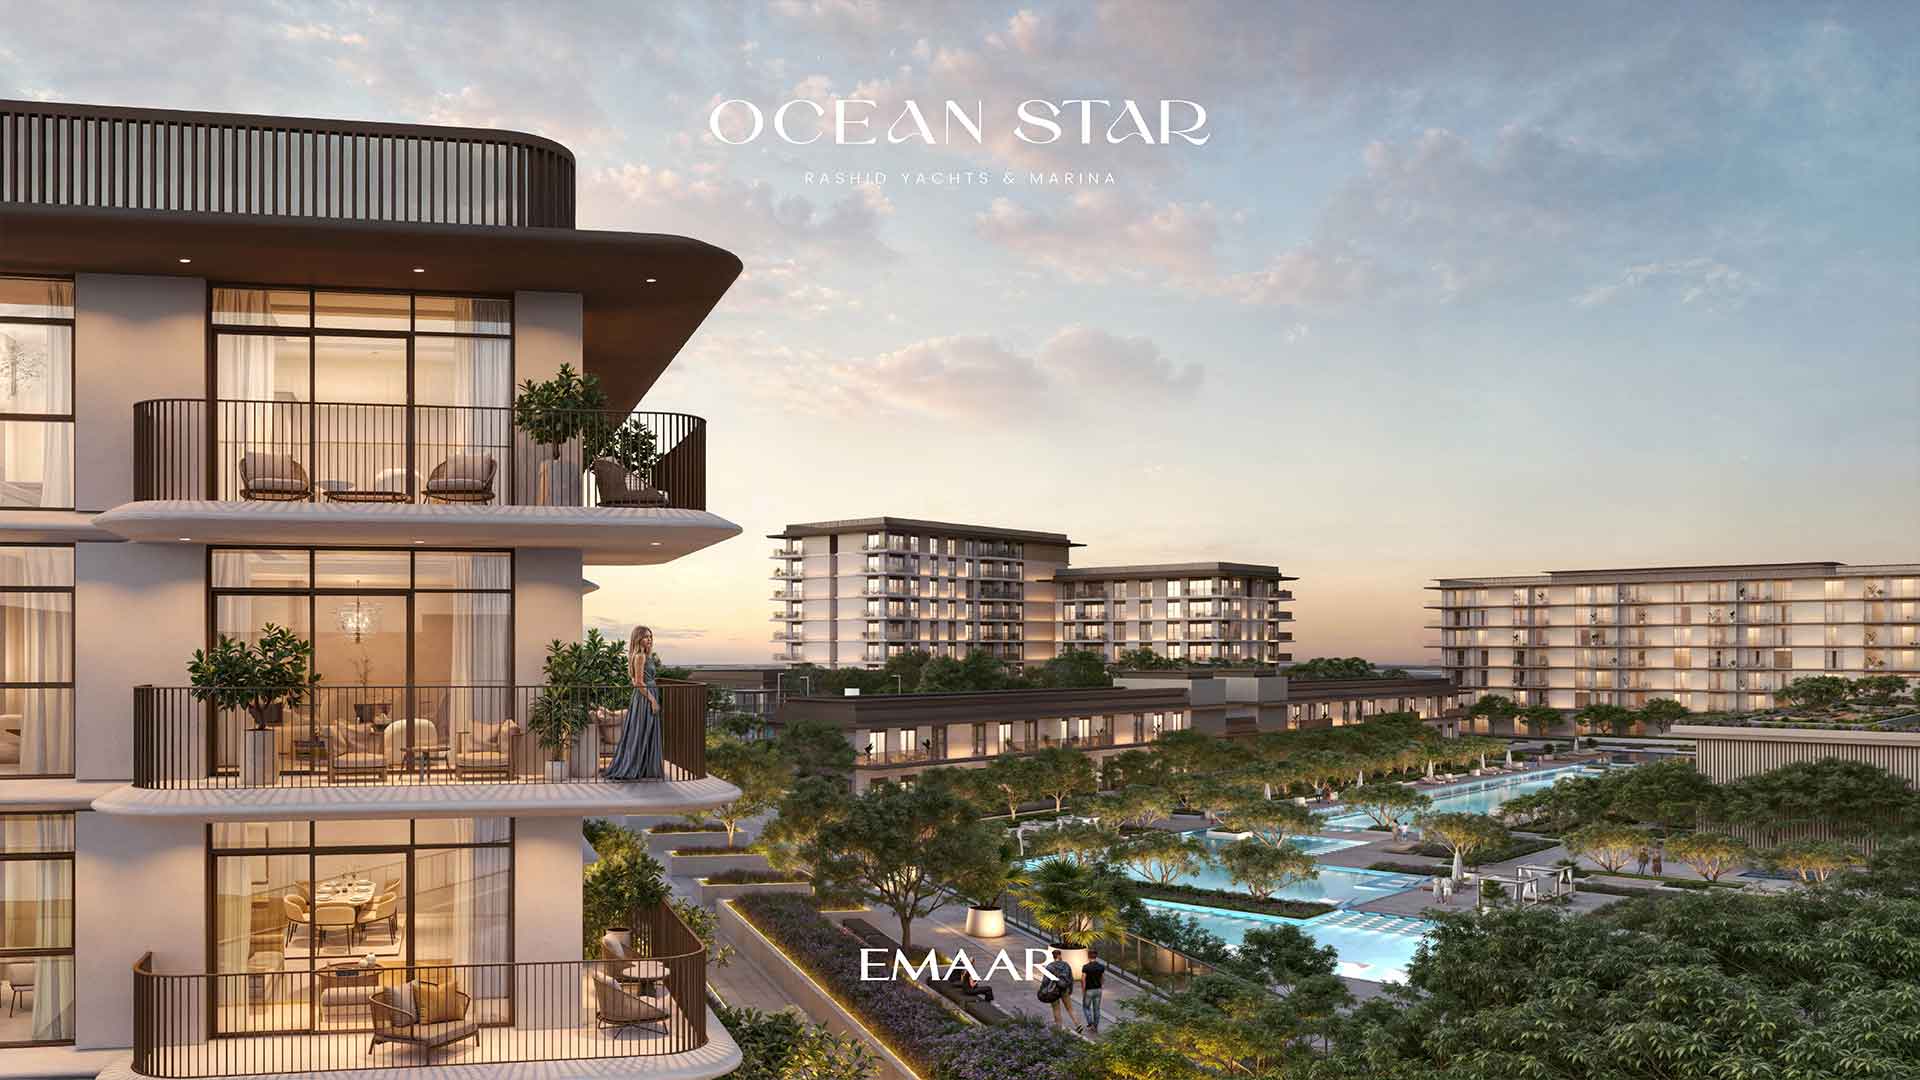 Ocean Star by Emaar at Rashid Yachts & Marina